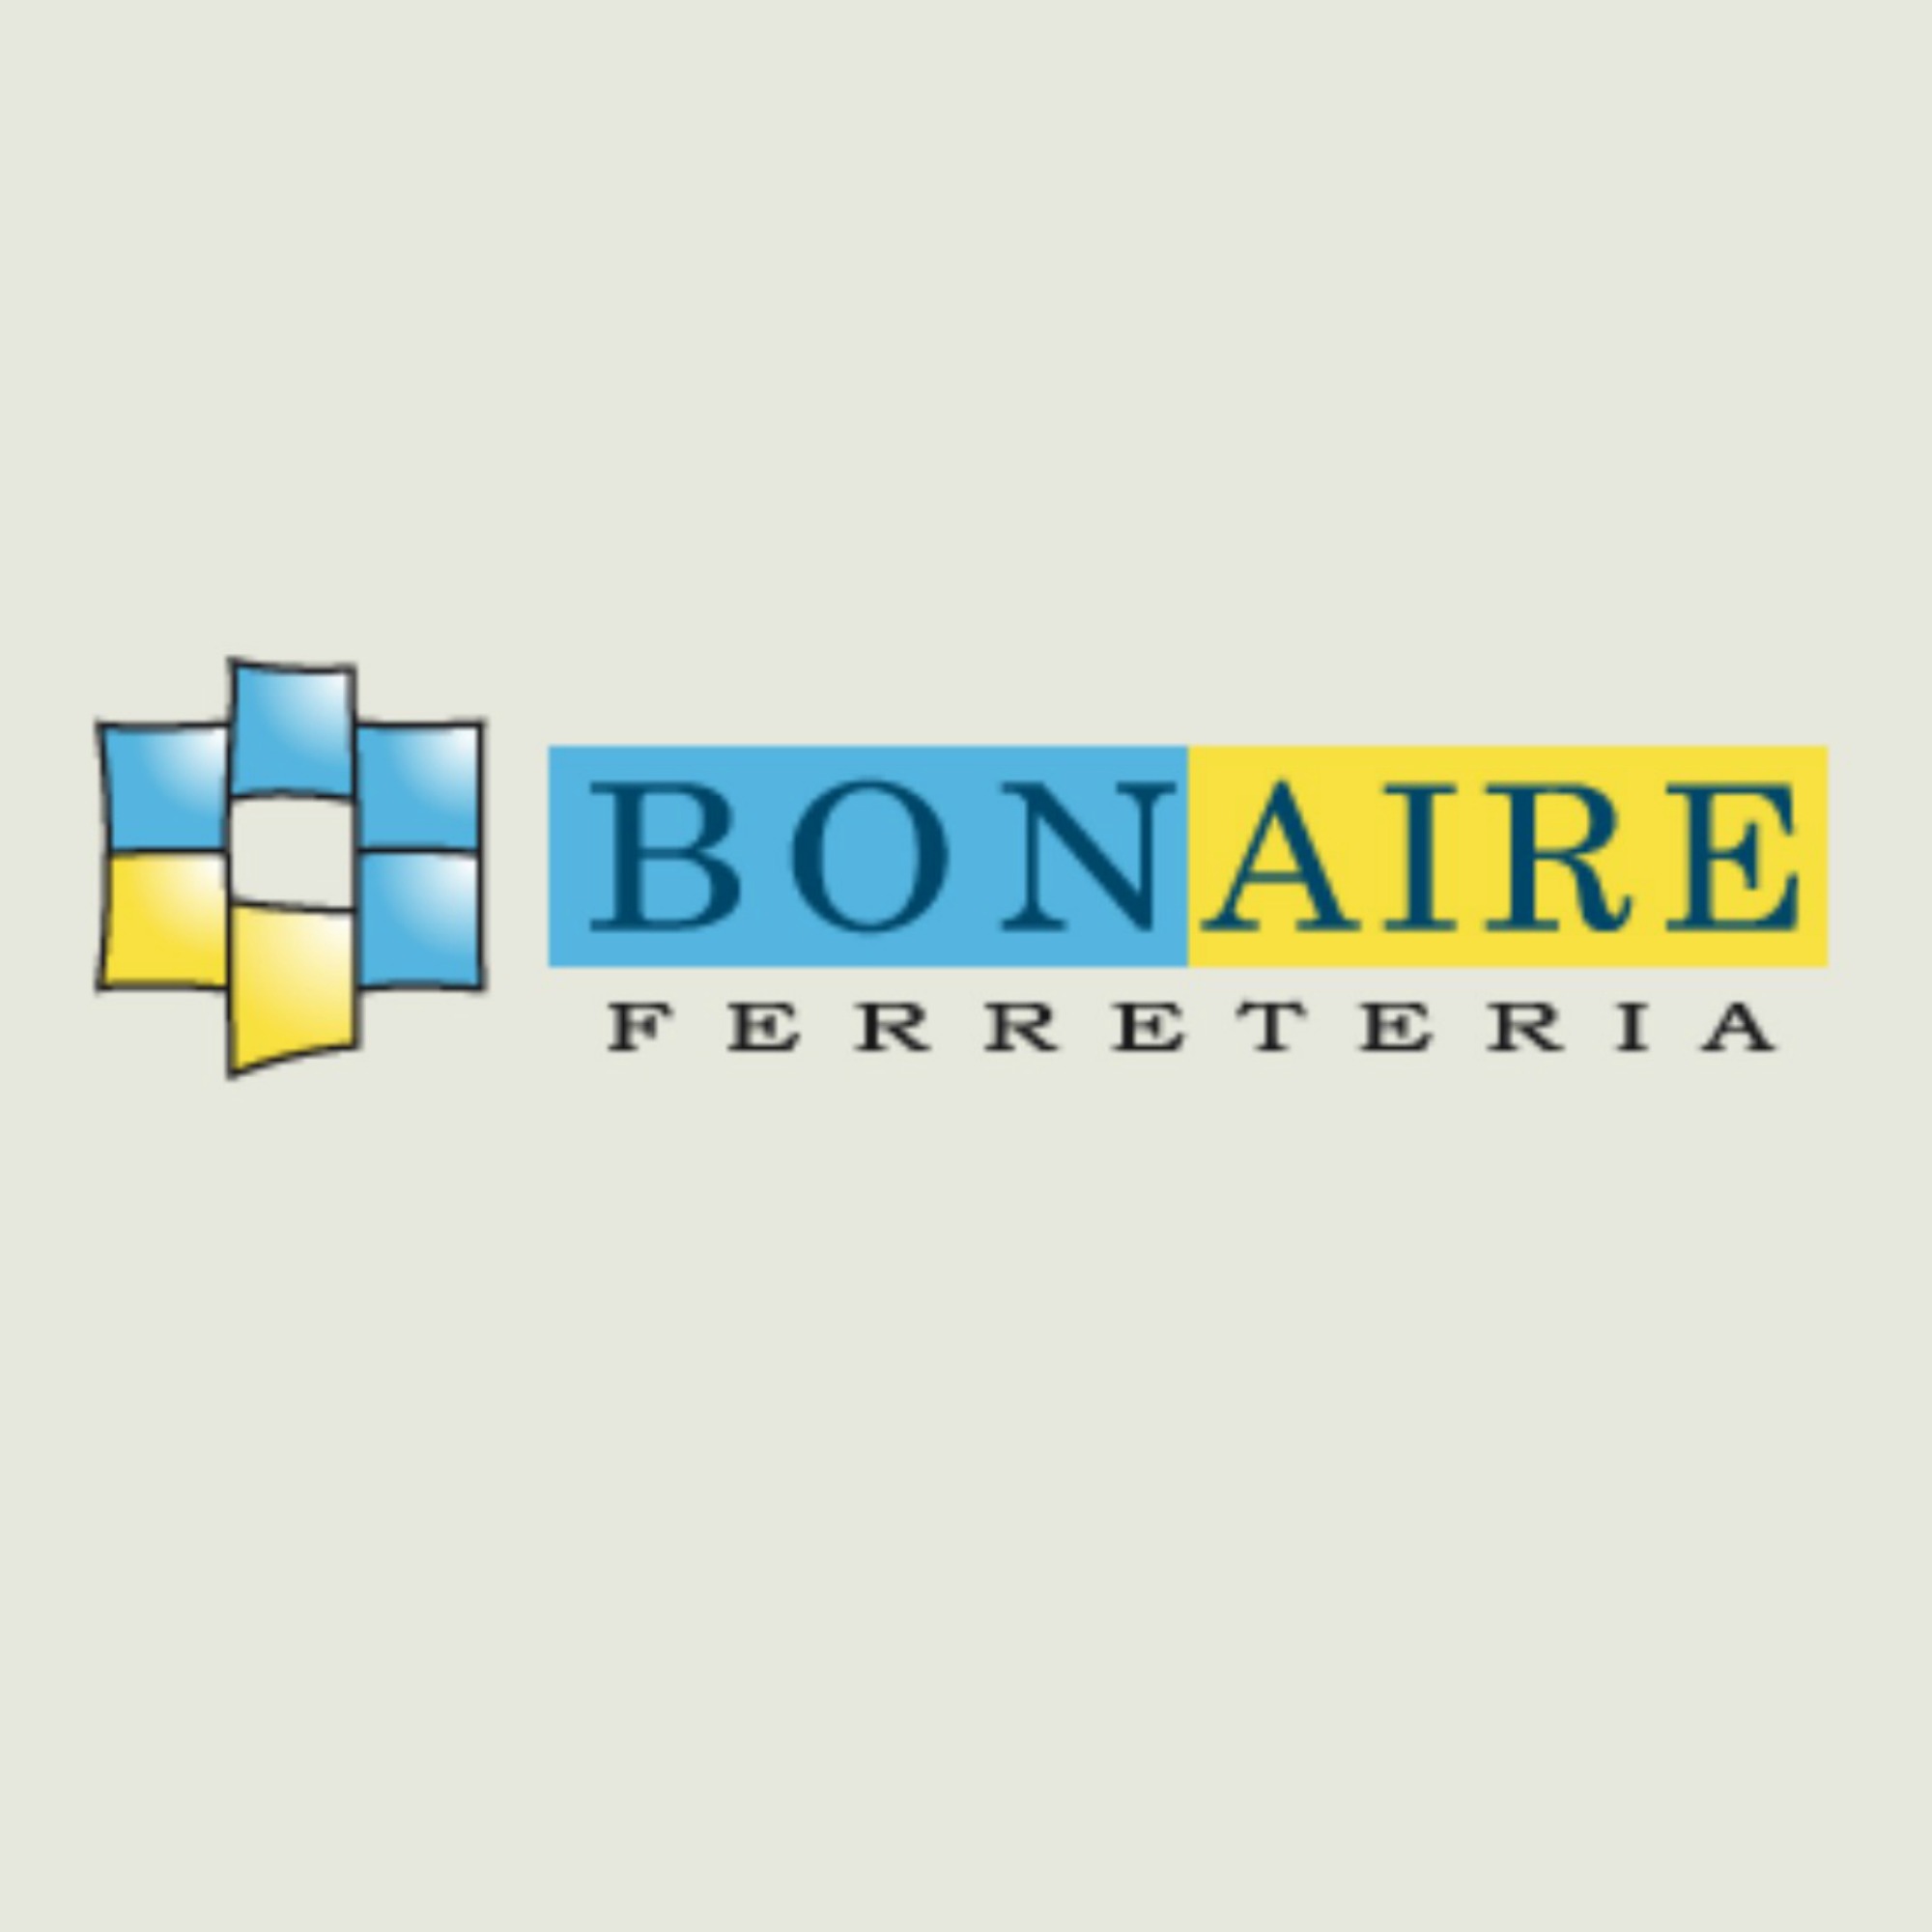 Ferretería Bonaire